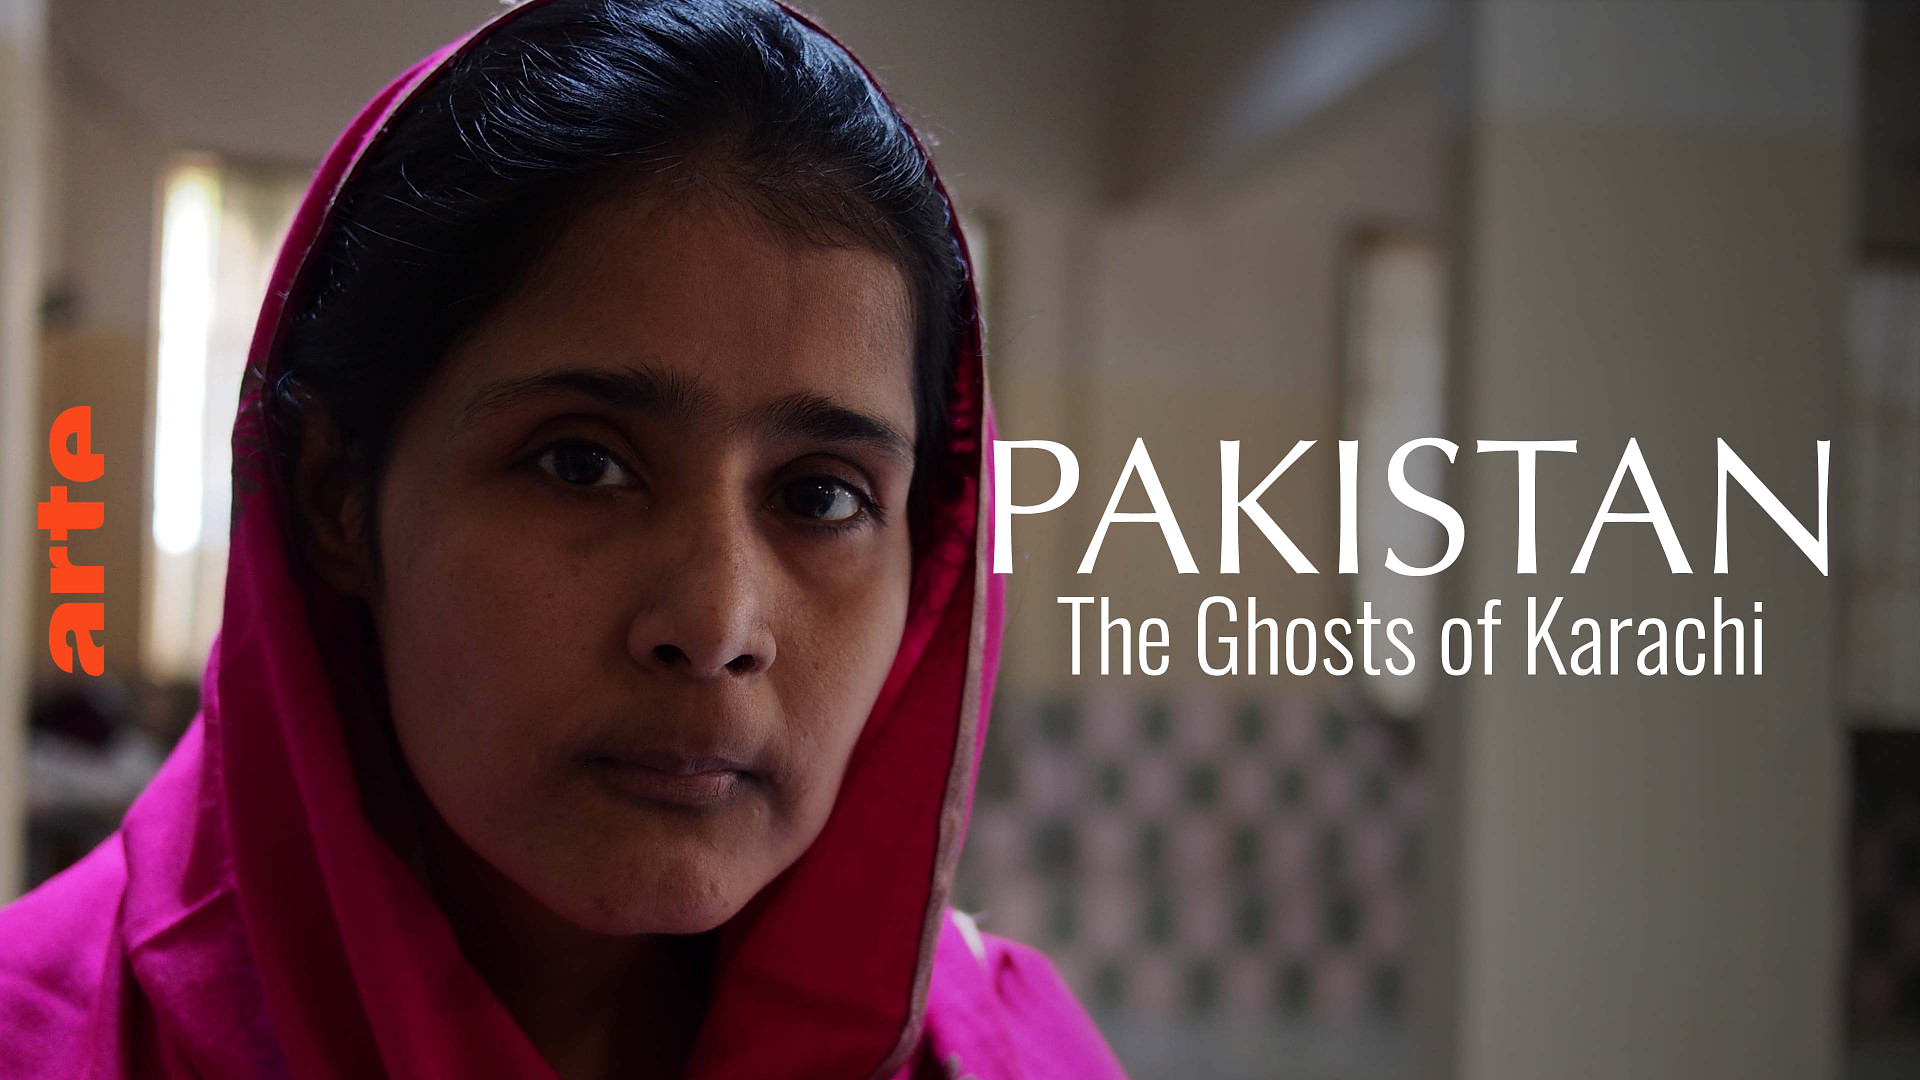 Www Pakistanipornvideo Com - Pakistan Blasphemy Law Documentary Goes For Emmy Victory